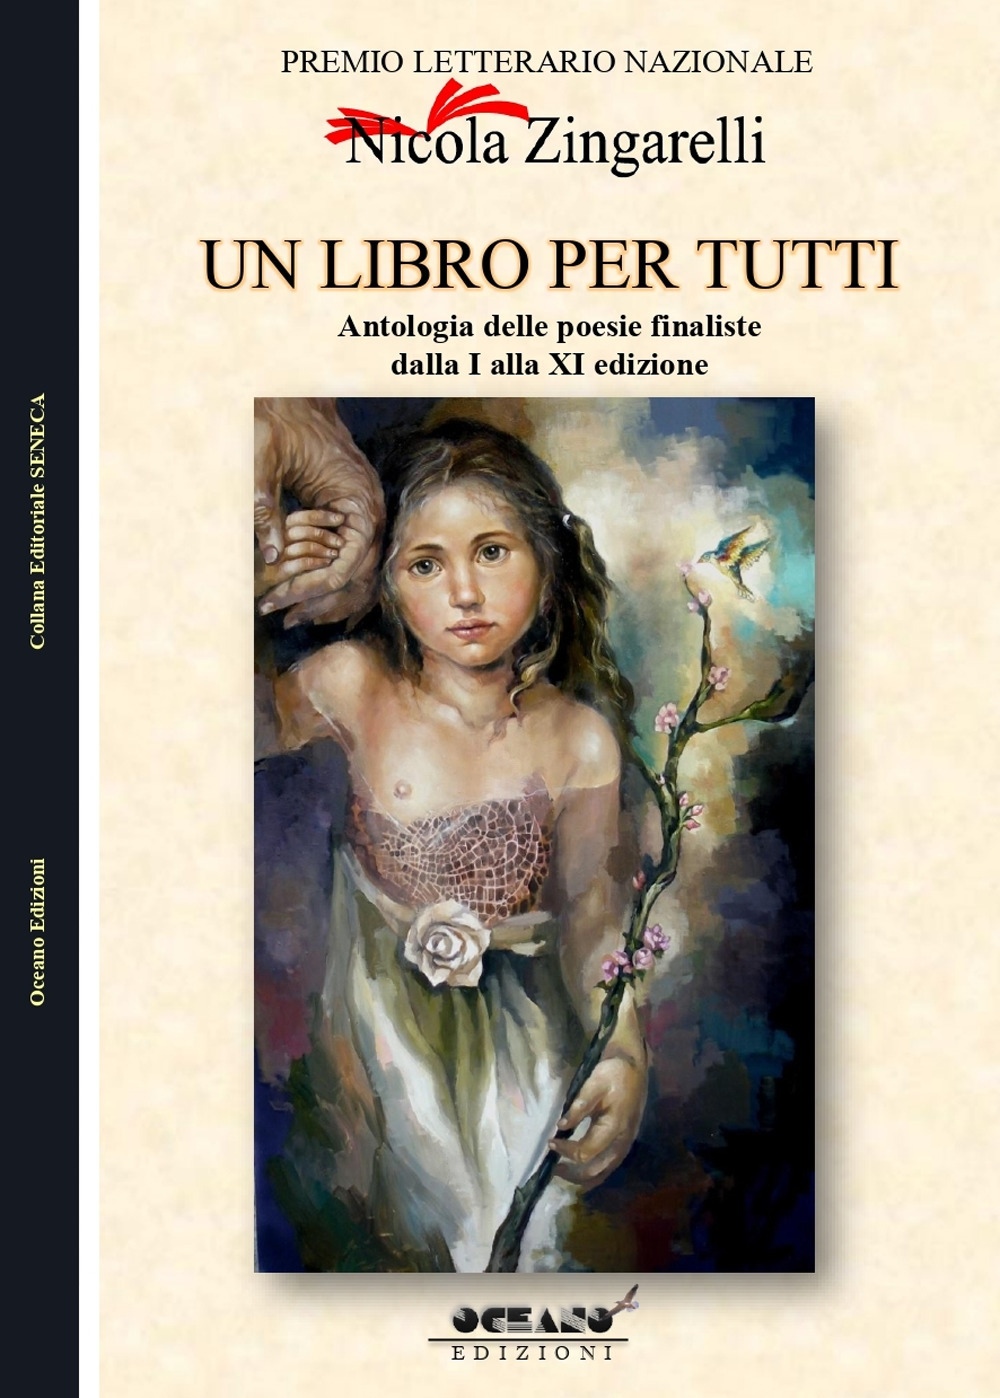 Un libro per tutti. Antologia del Premio Letterario Nazionale dedicato a Nicola Zingarelli